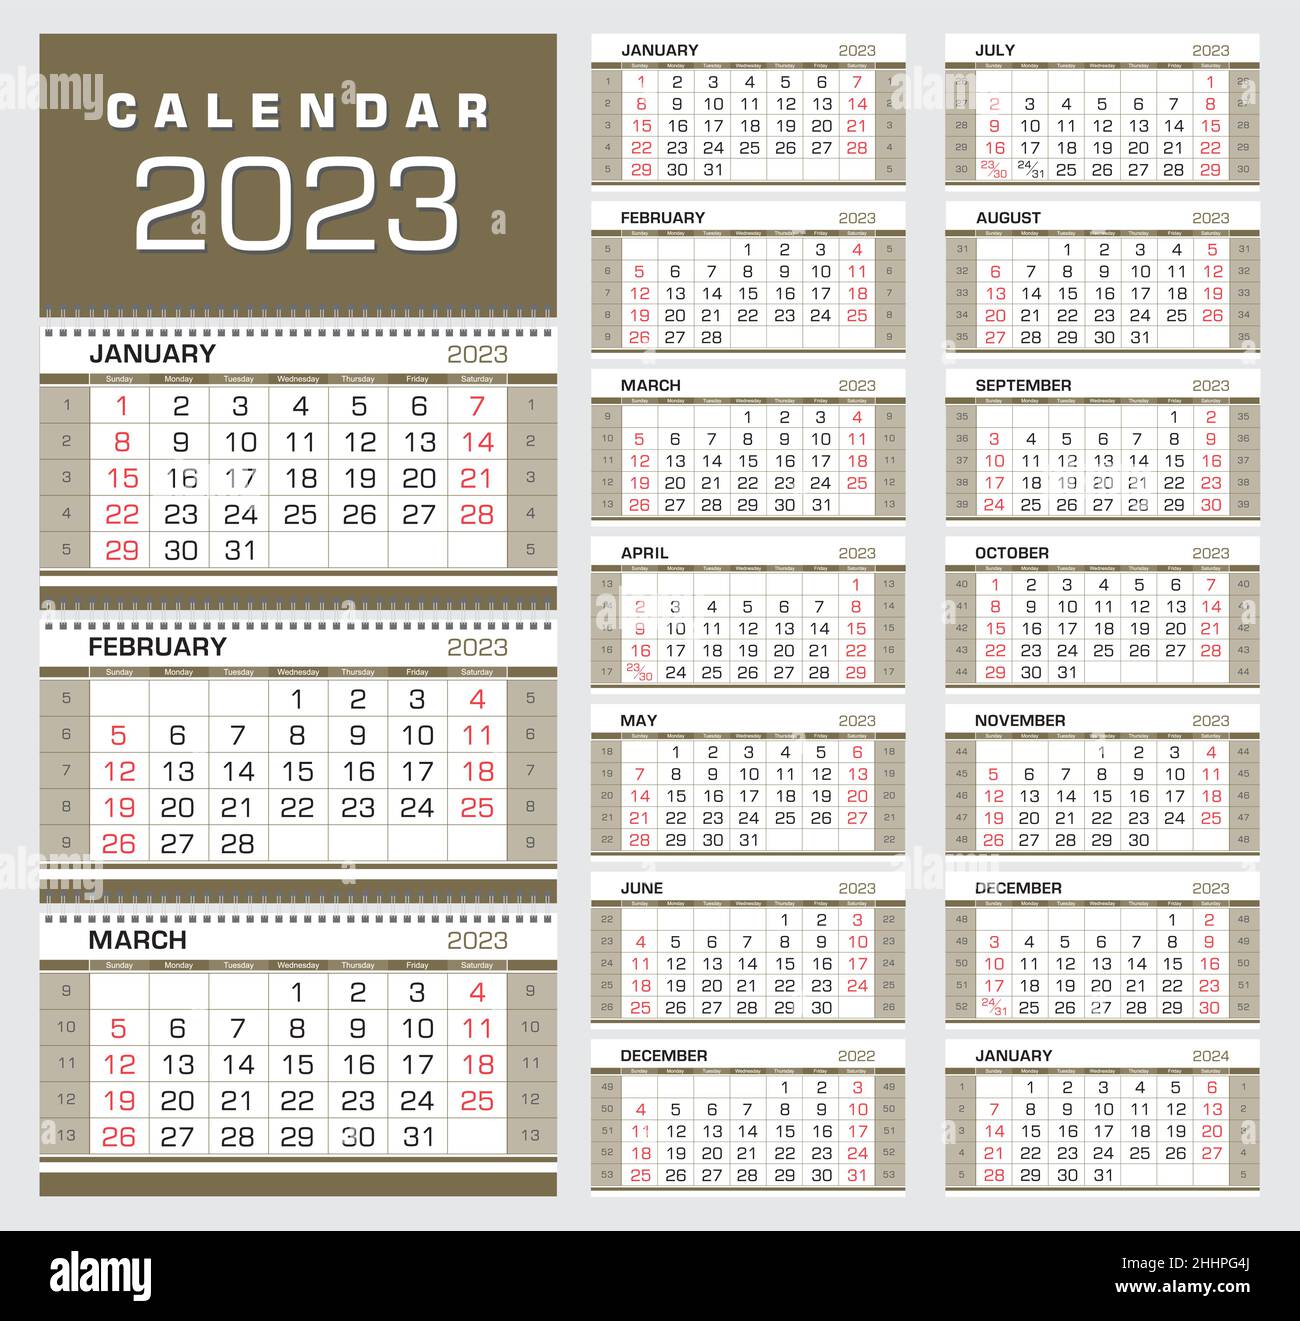 Calendario 2023 Calendario Trimestral Del Muro Con Numeros De Semana La Semana Comienza El Domingo Listo Para Imprimir Color Negro Rojo Dorado Ilustracion Vectorial 2hhpg4j 